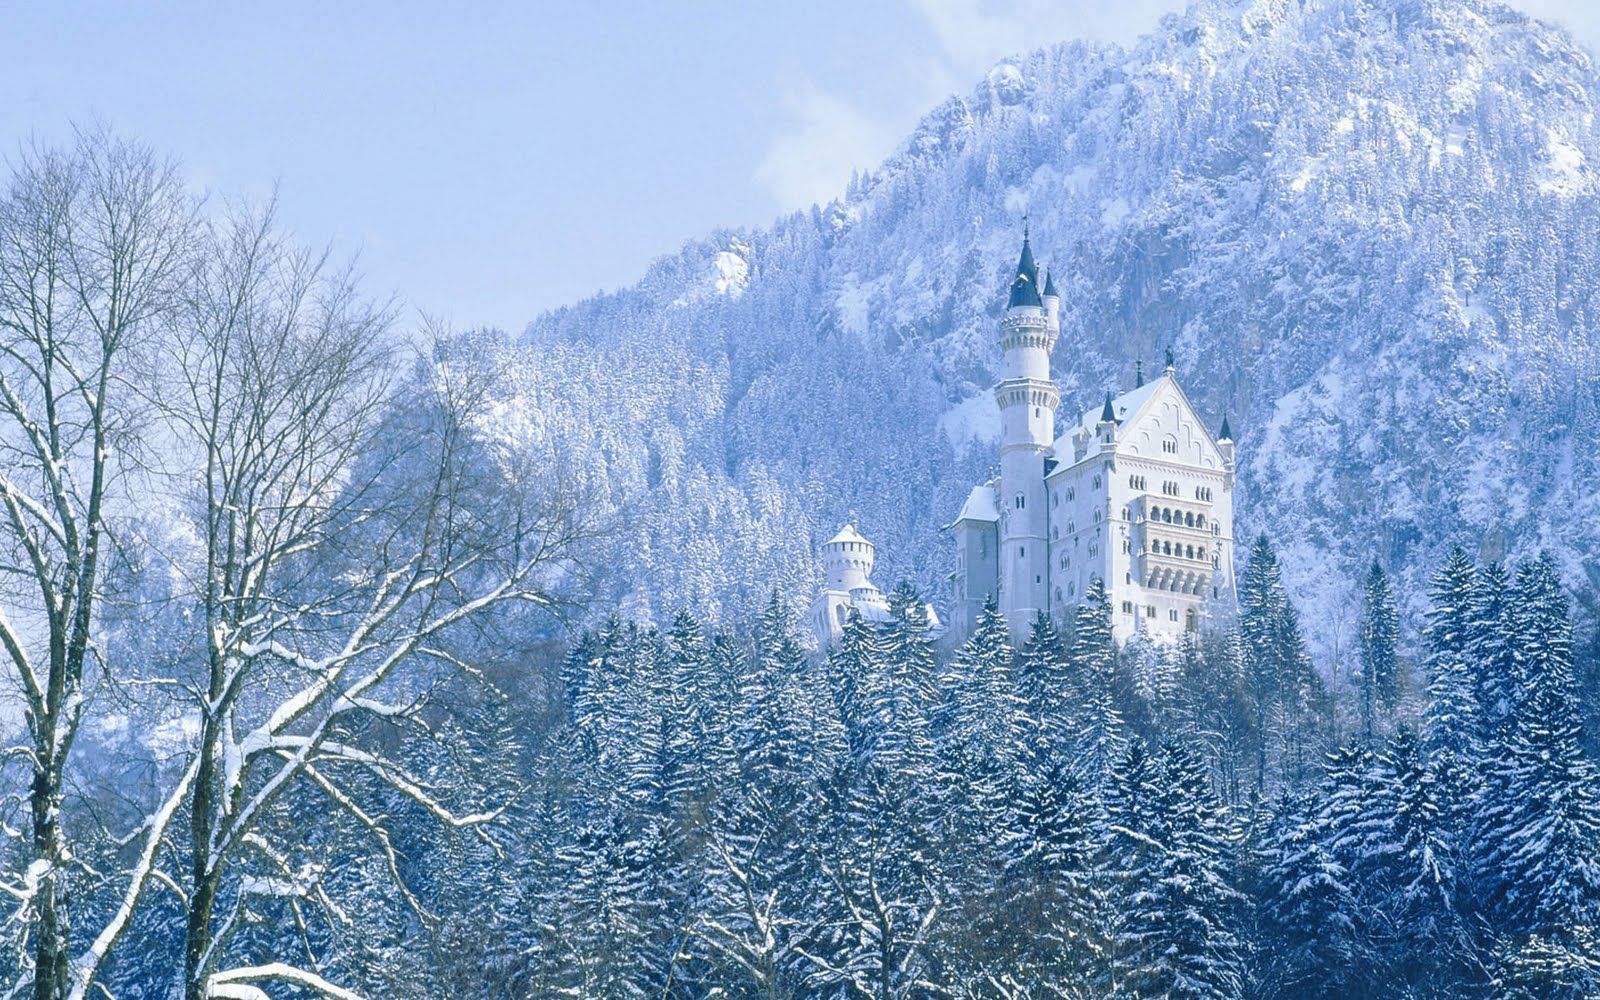 U5eDVWRzyHA Tju1FEJIsmI AAAAAAAAMRE I4sp3Y5COdk S1600 Best Top Desktop Castle Wallpaper. Neuschwanstein Castle, Castle, Winter Picture